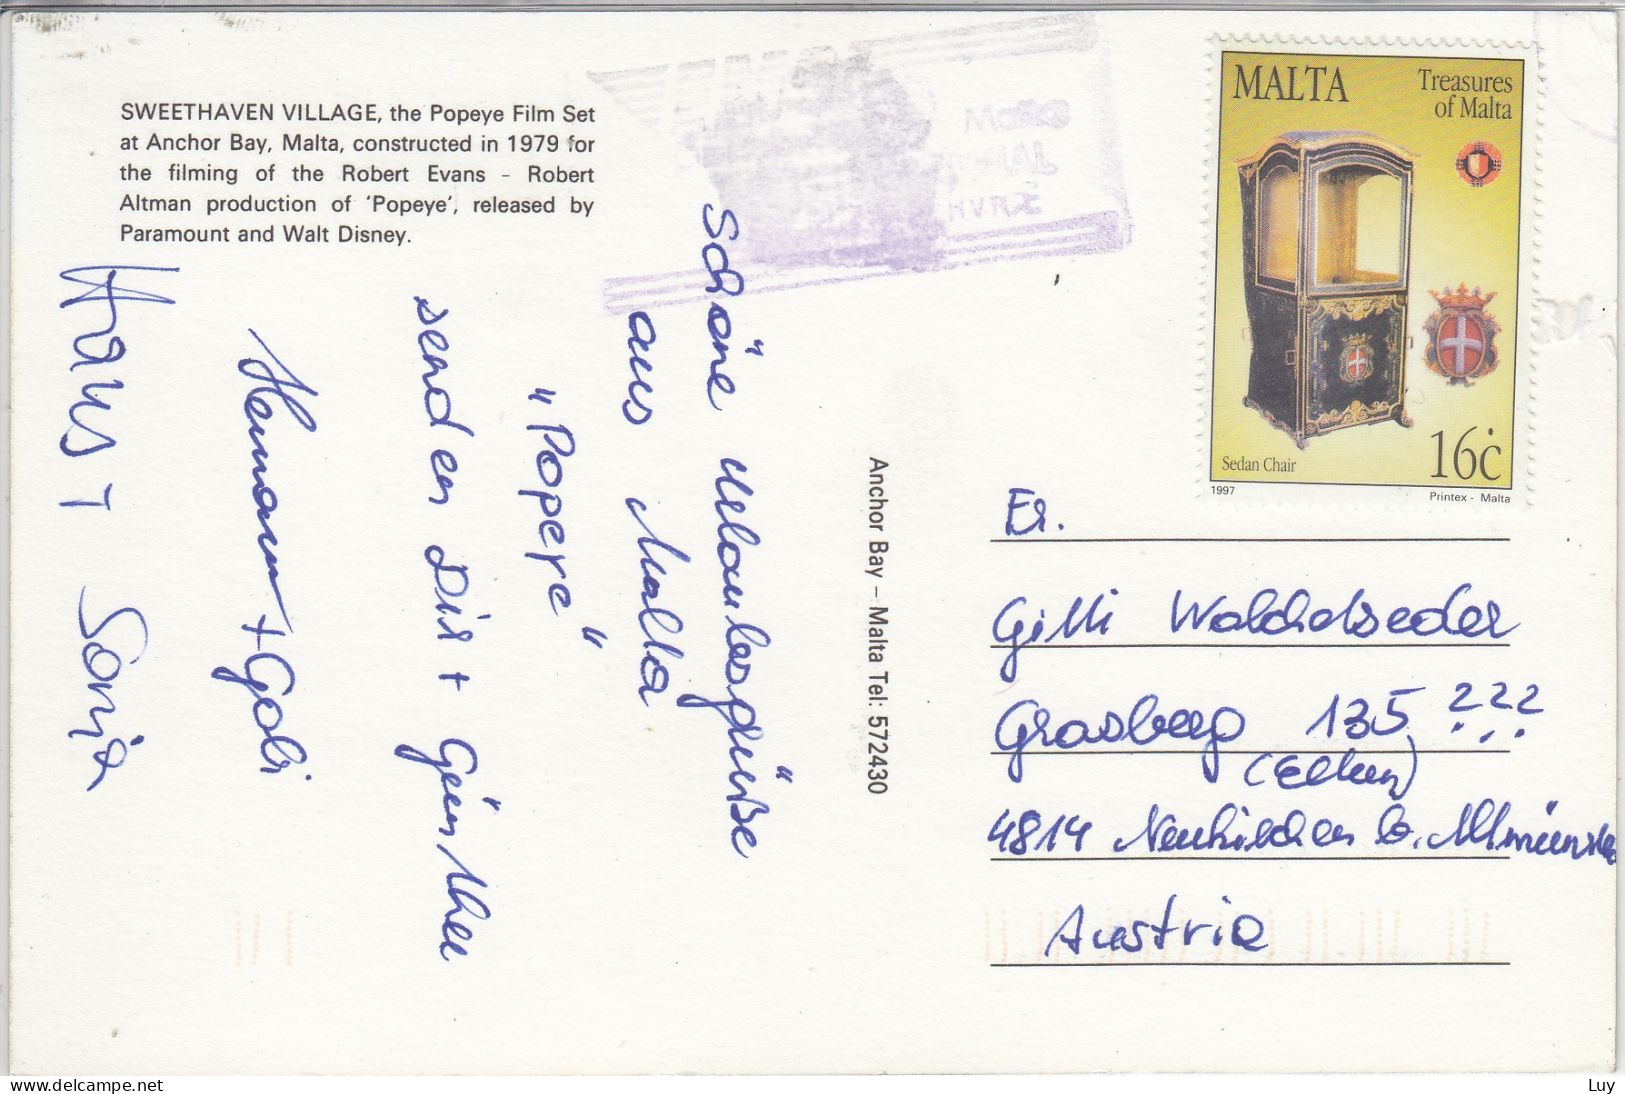 MALTA - SWEETHAVEN VILLAGE, POPEYE VILLAGE - At Anchor Bay,  Nice Stamp - Malte